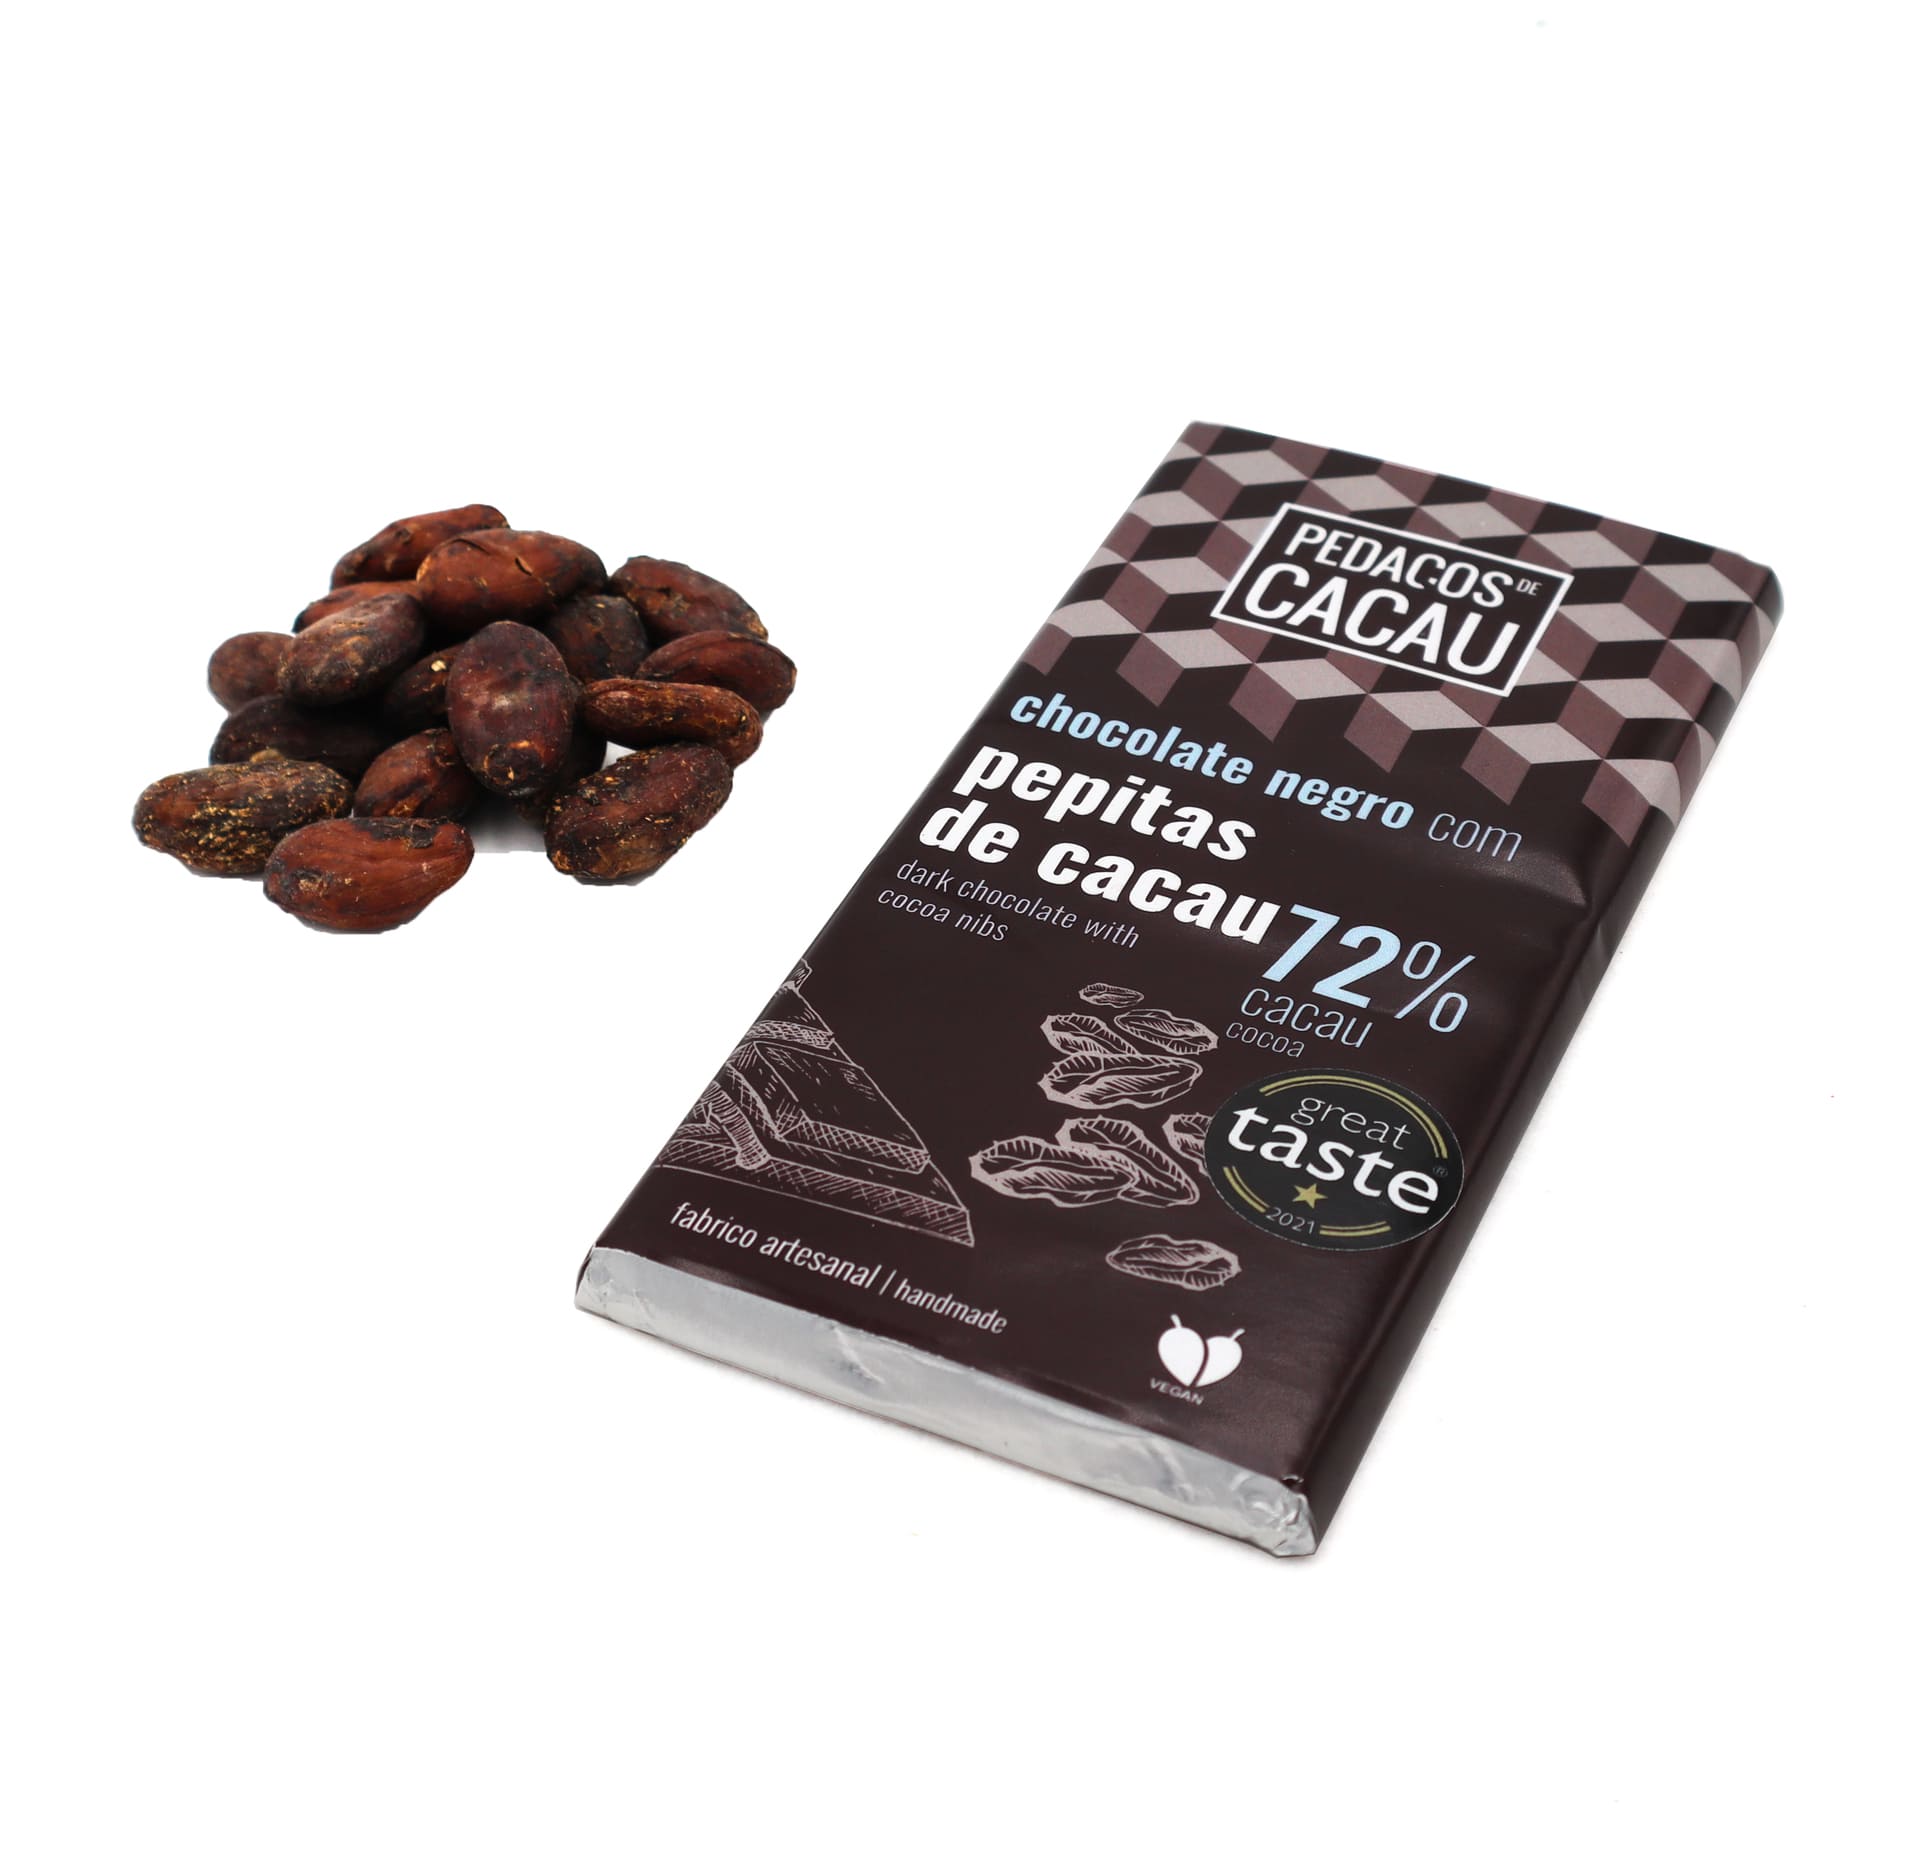 100g Chocolate Bar - Cocoa Nibs